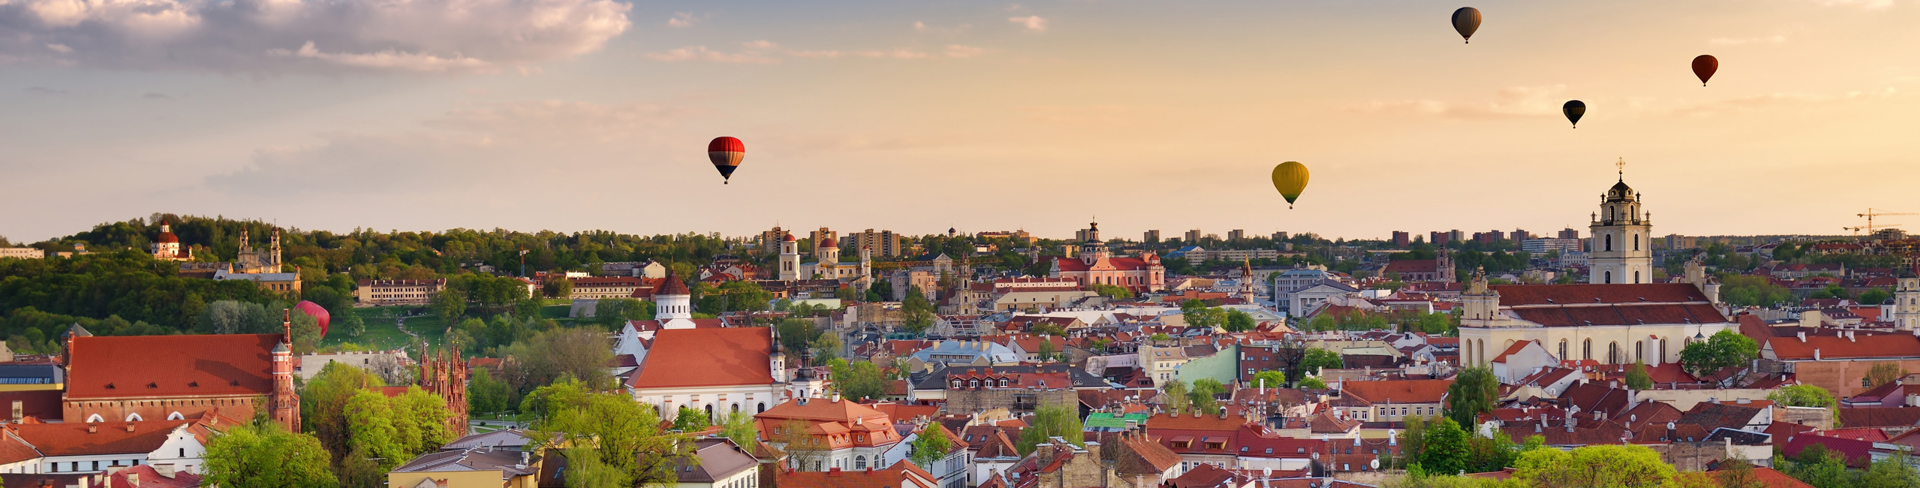 Dienstregeling-naar-Litouwen-Klaipėda-ballonnen-in-the-sky